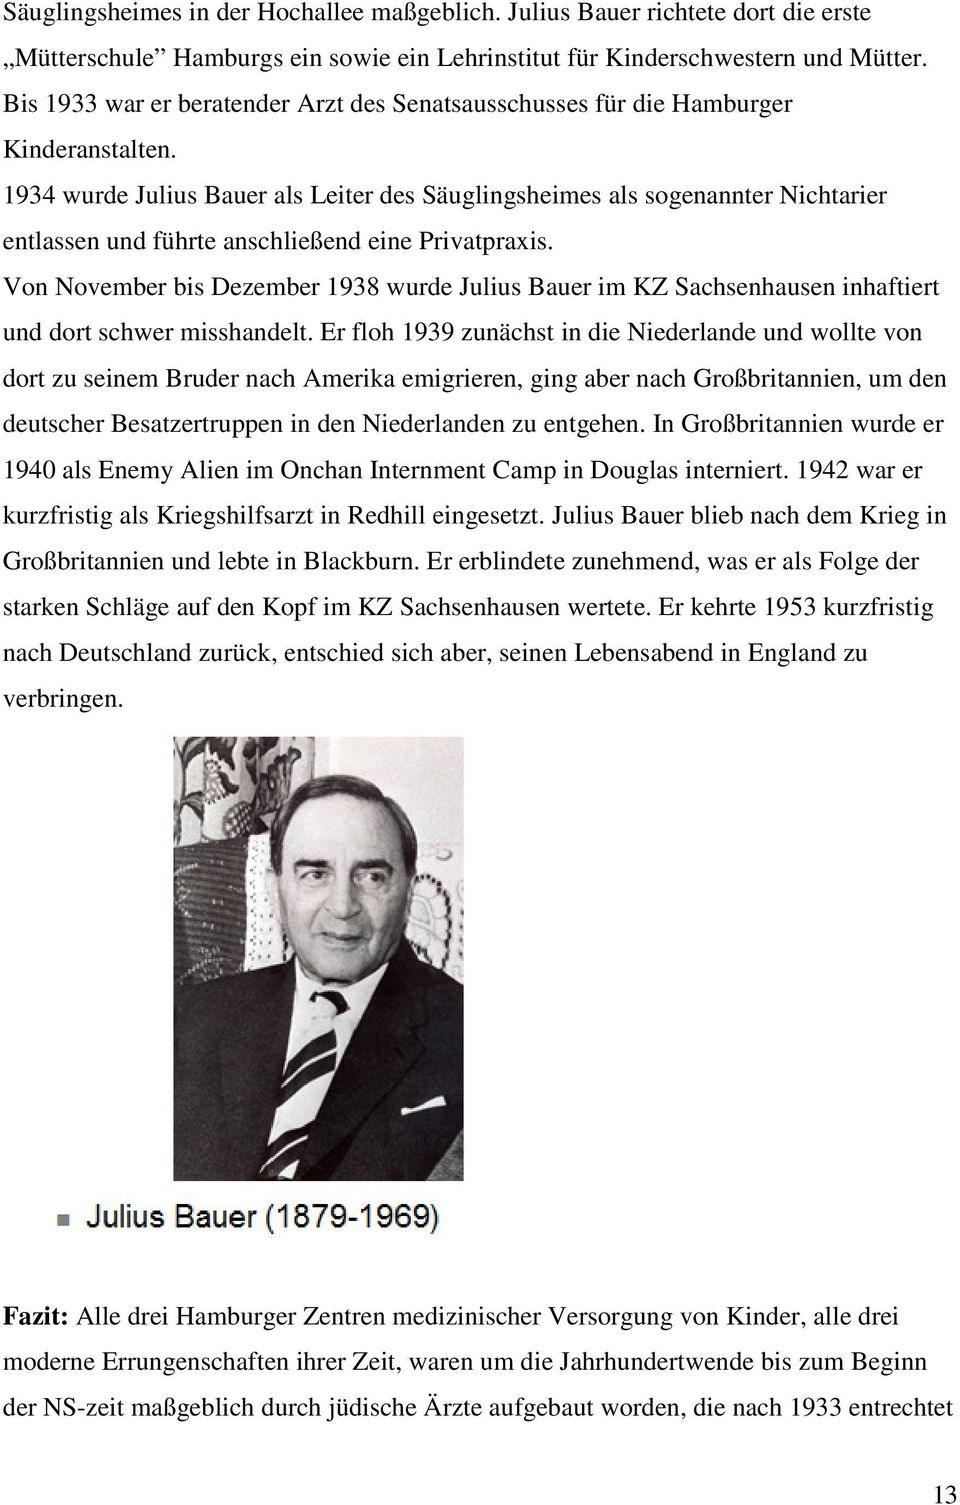 1934 wurde Julius Bauer als Leiter des Säuglingsheimes als sogenannter Nichtarier entlassen und führte anschließend eine Privatpraxis.